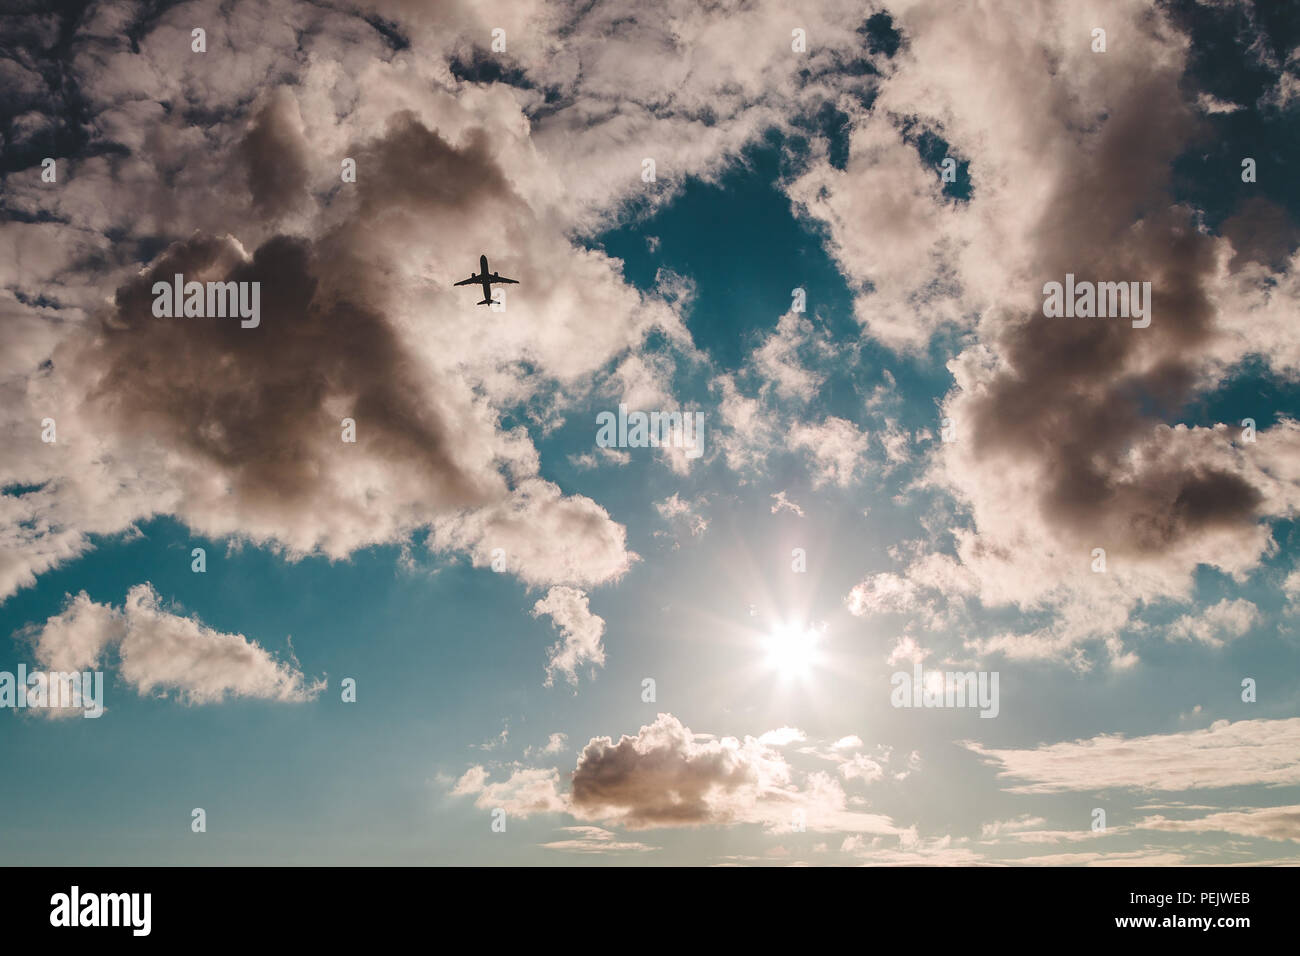 Silhouette eines abfliegenden Flugzeuge gegen einen teilweise bewölktem Himmel mit der Sonne. Stockfoto